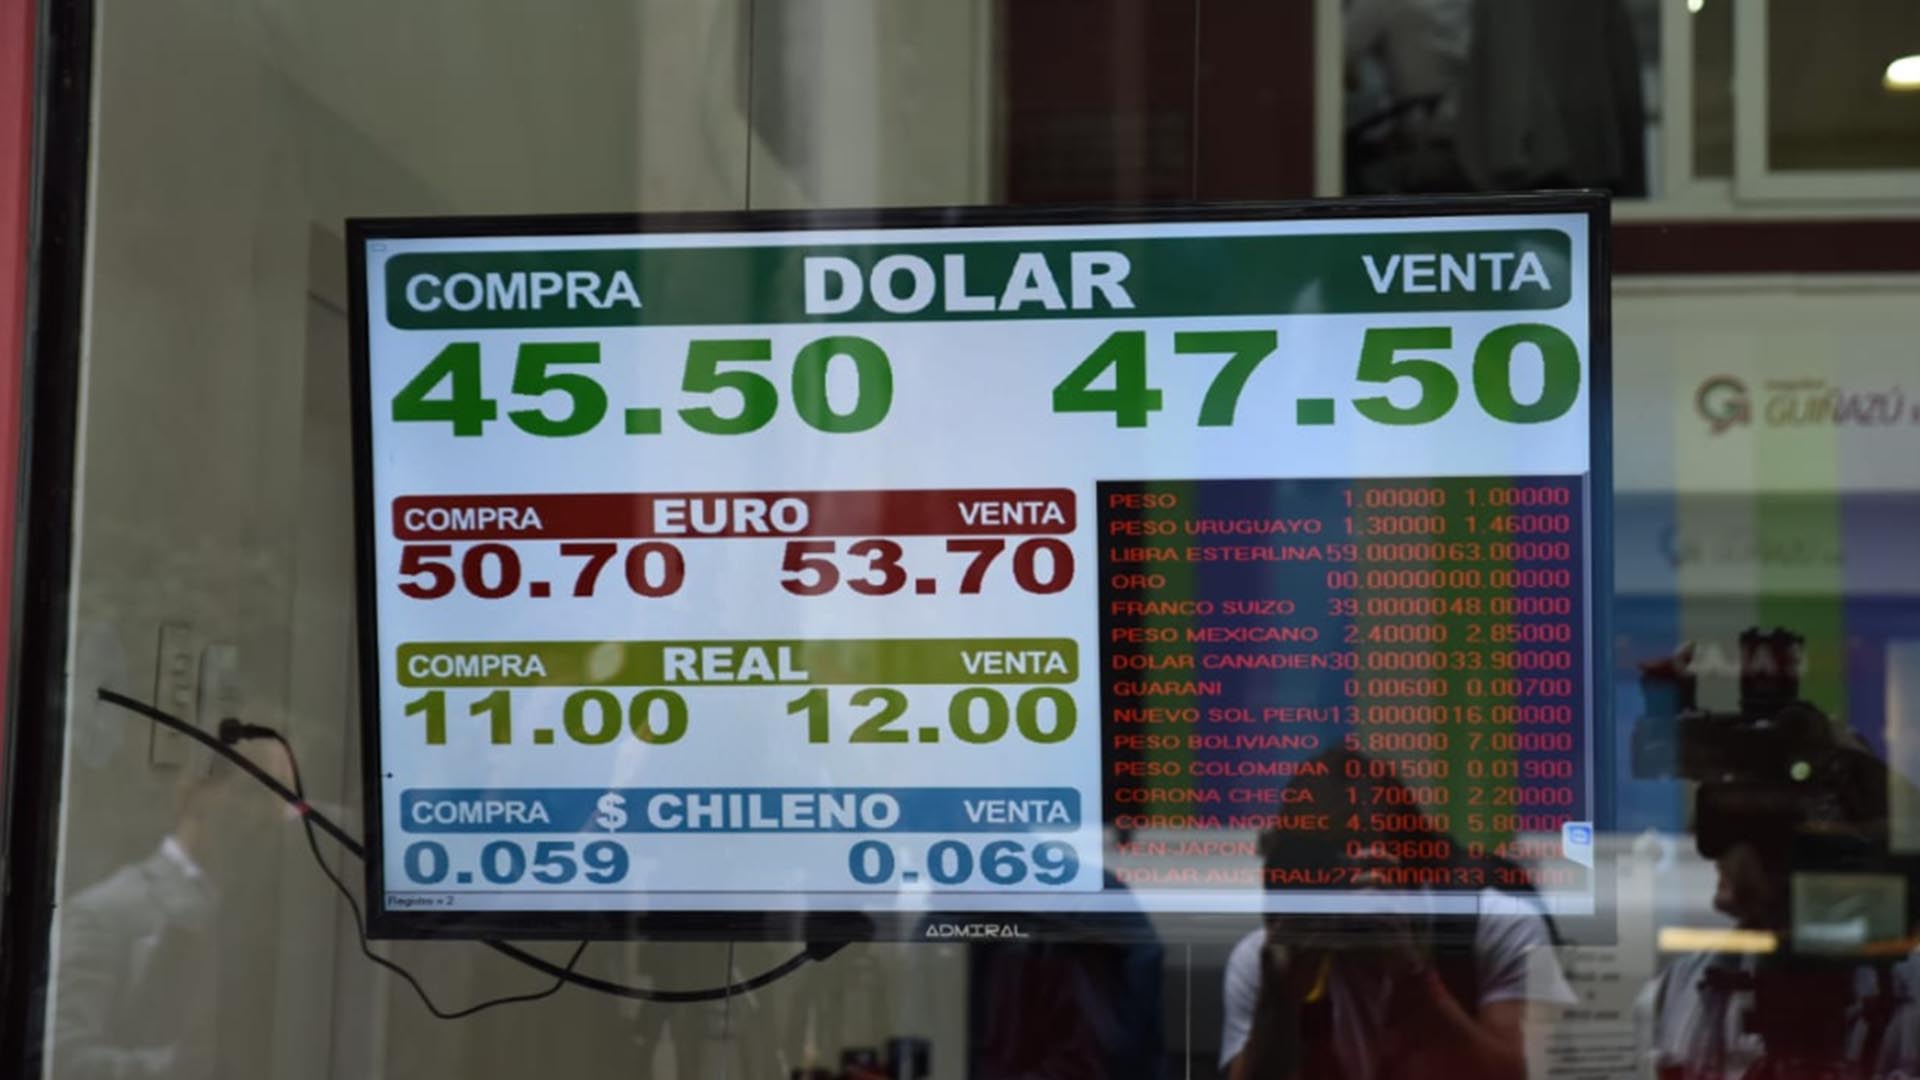 El dólar llegó esta mañana a $47,50 en el Banco Nación (Foto: Franco Fafasuli)